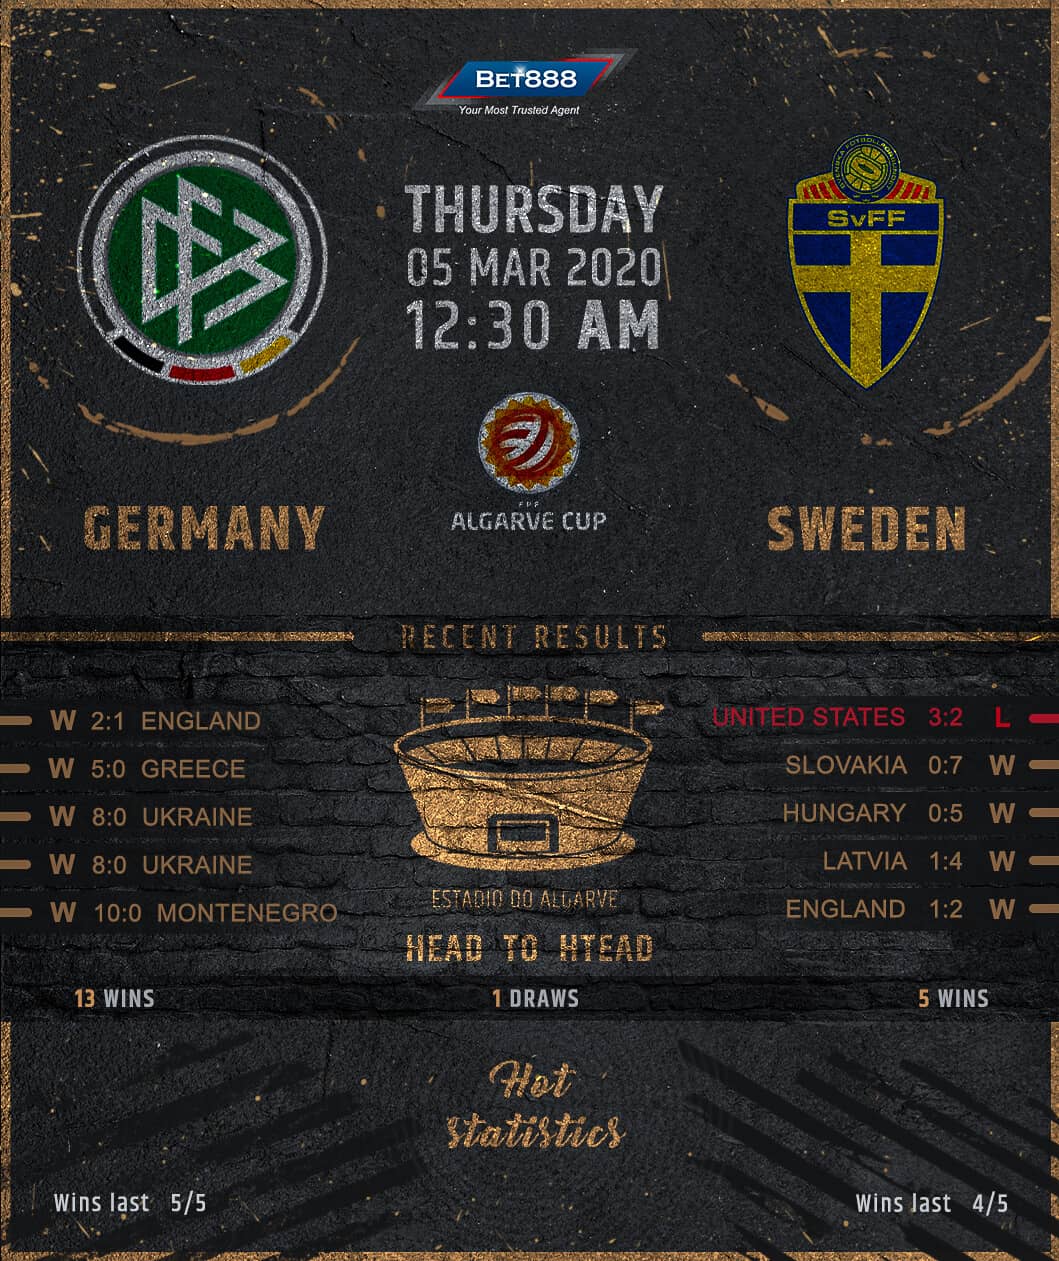 Germany vs Sweden 05/03/20